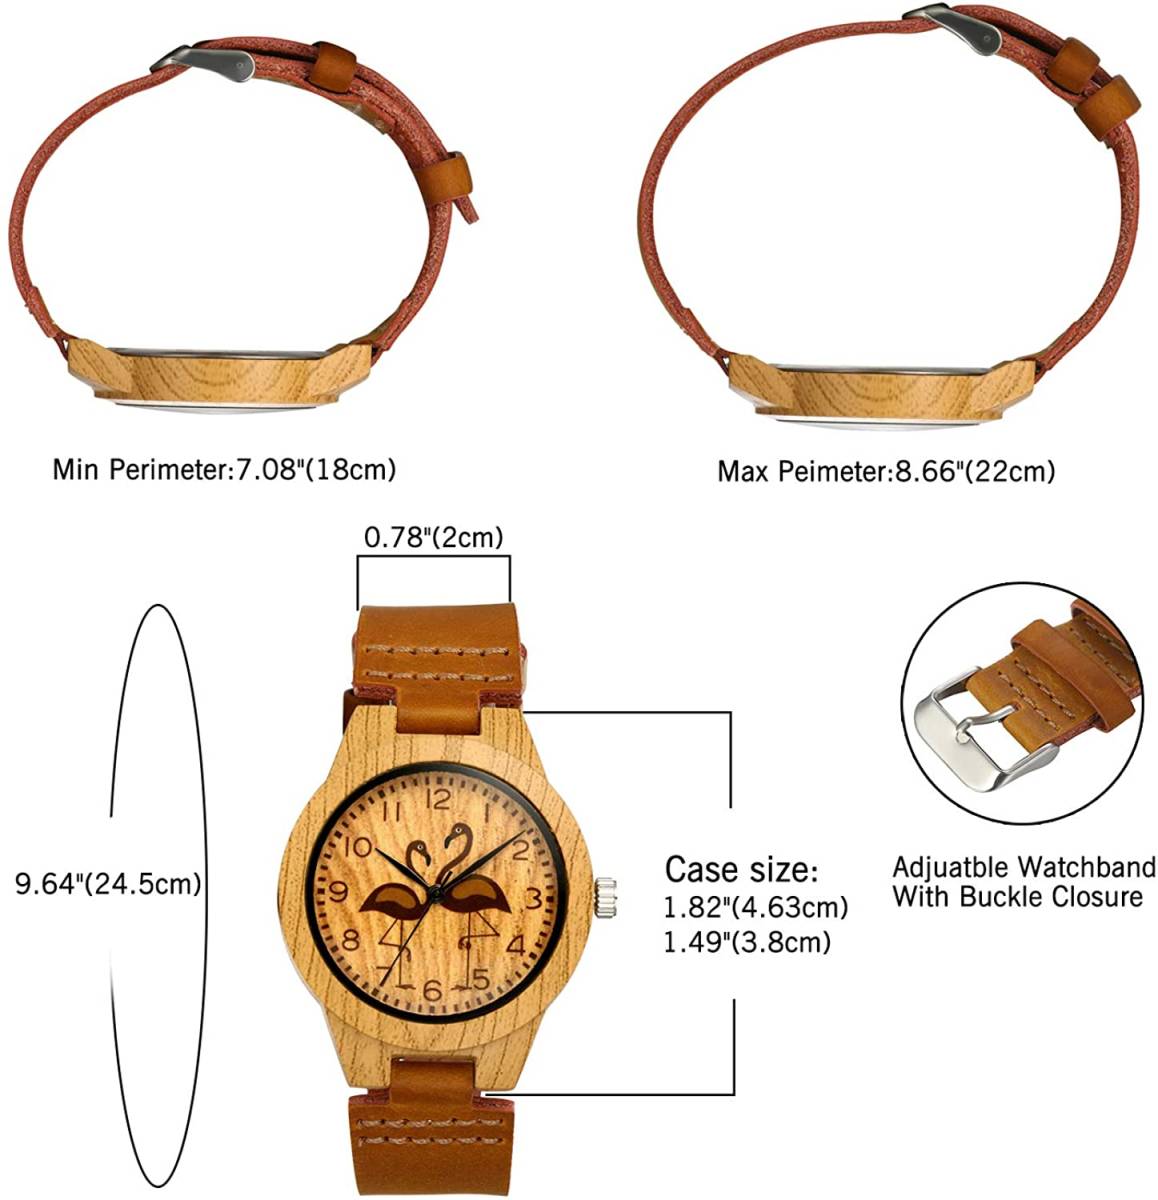    ... хороший  дизайн      наручные часы   кварцевый   коричневый   легкий (по весу)   водонепроницаемый   женский  ...  повседневный   часы   часы    антиквариат   женщина   подарок 